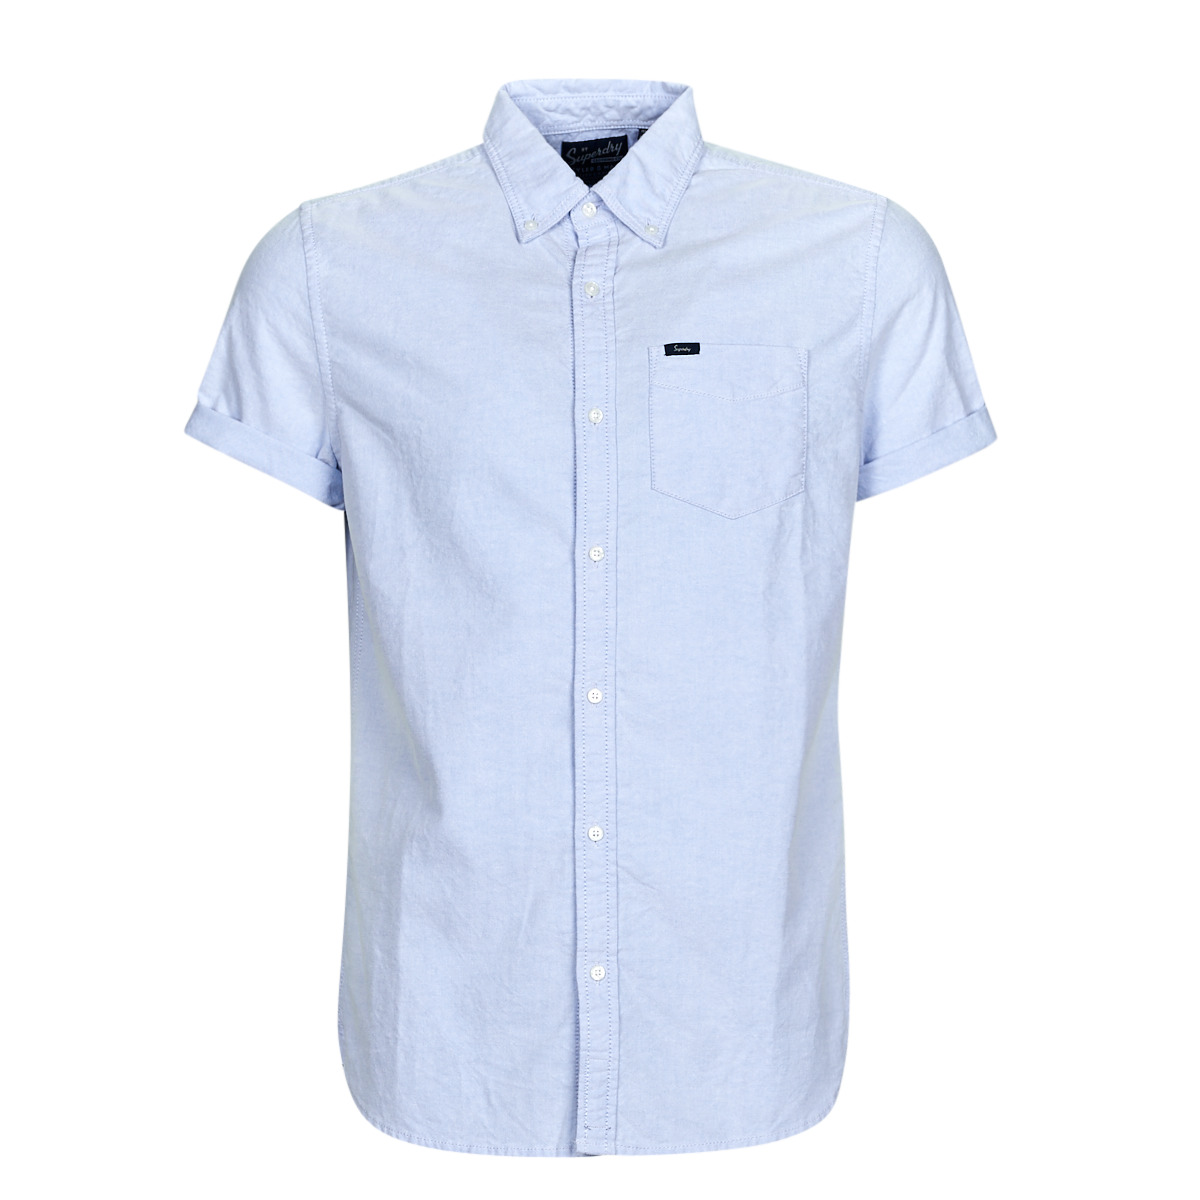 Textil Muži Košile s krátkými rukávy Superdry VINTAGE OXFORD S/S SHIRT Modrá